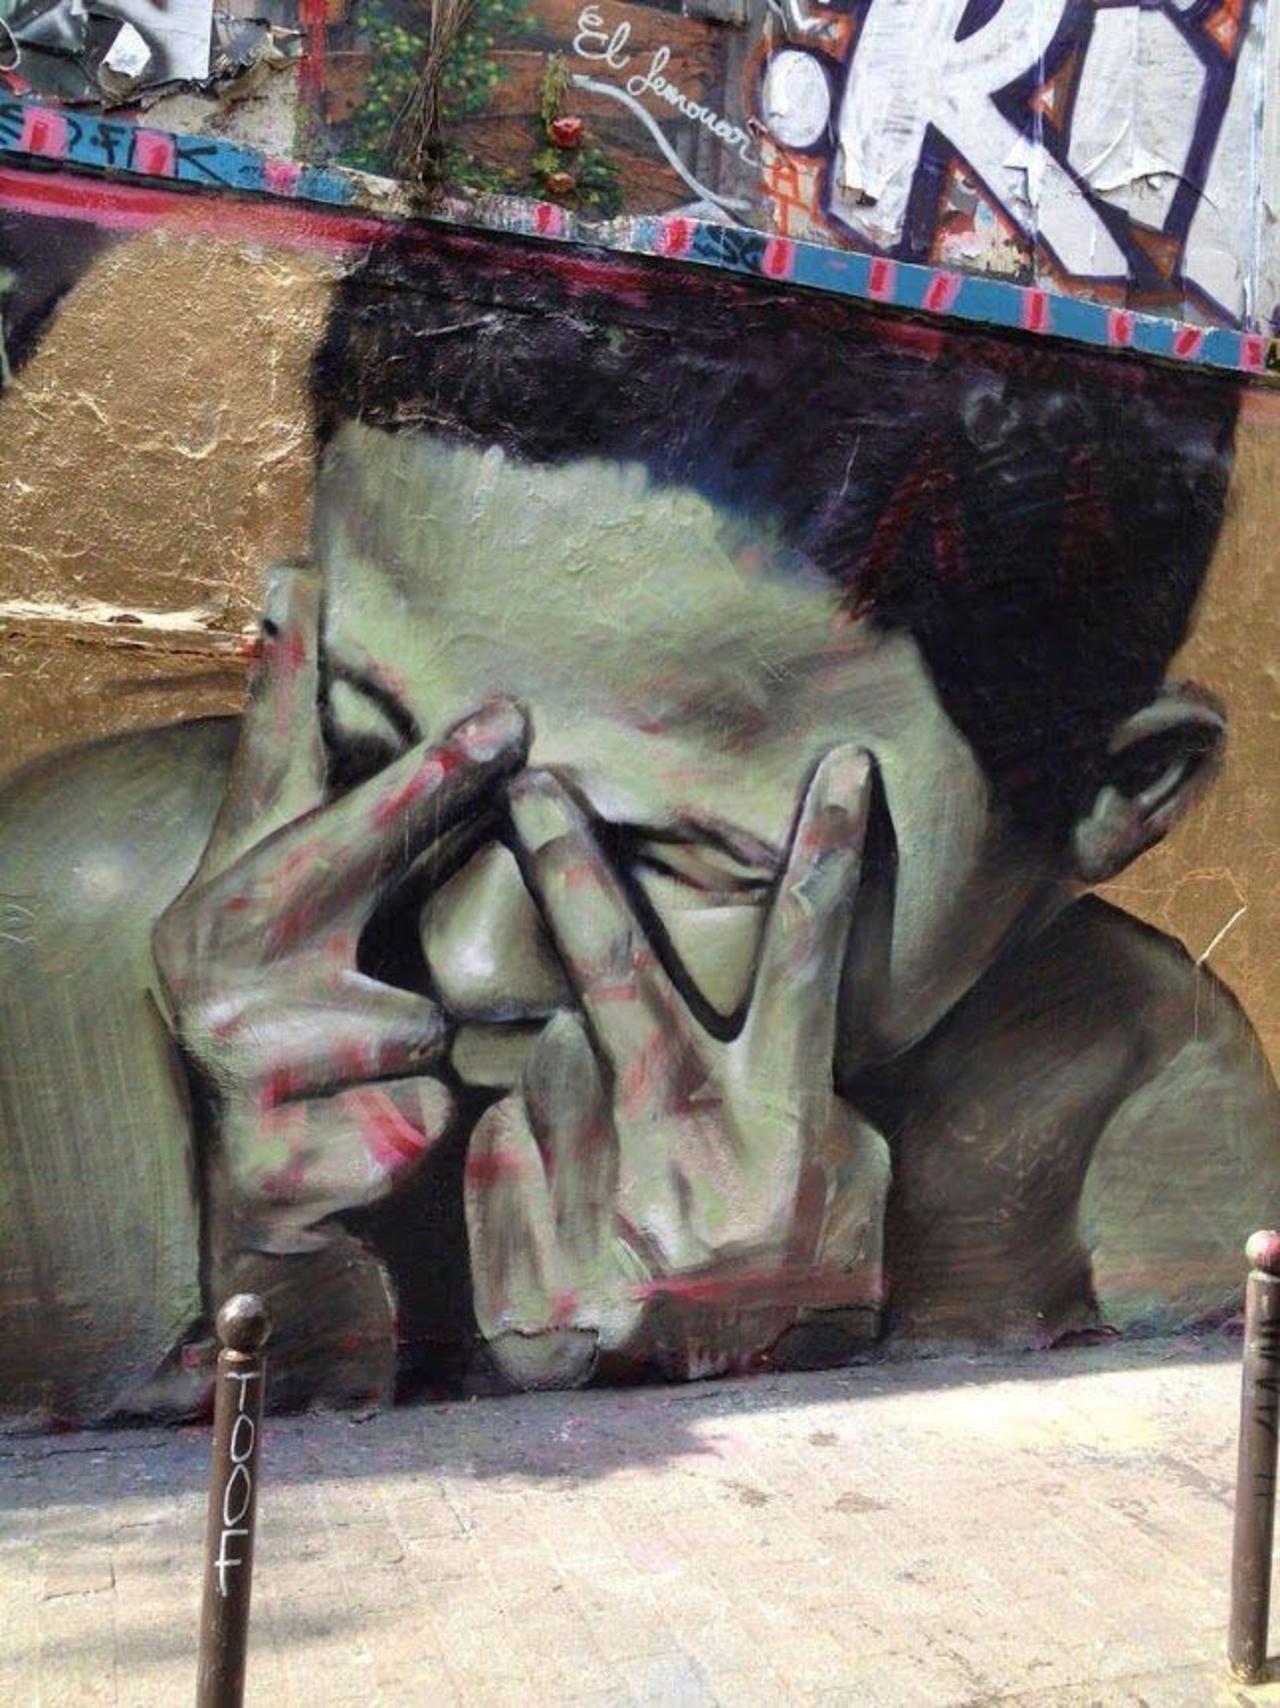 #Streetart #Graffiti http://t.co/OX40za9zud